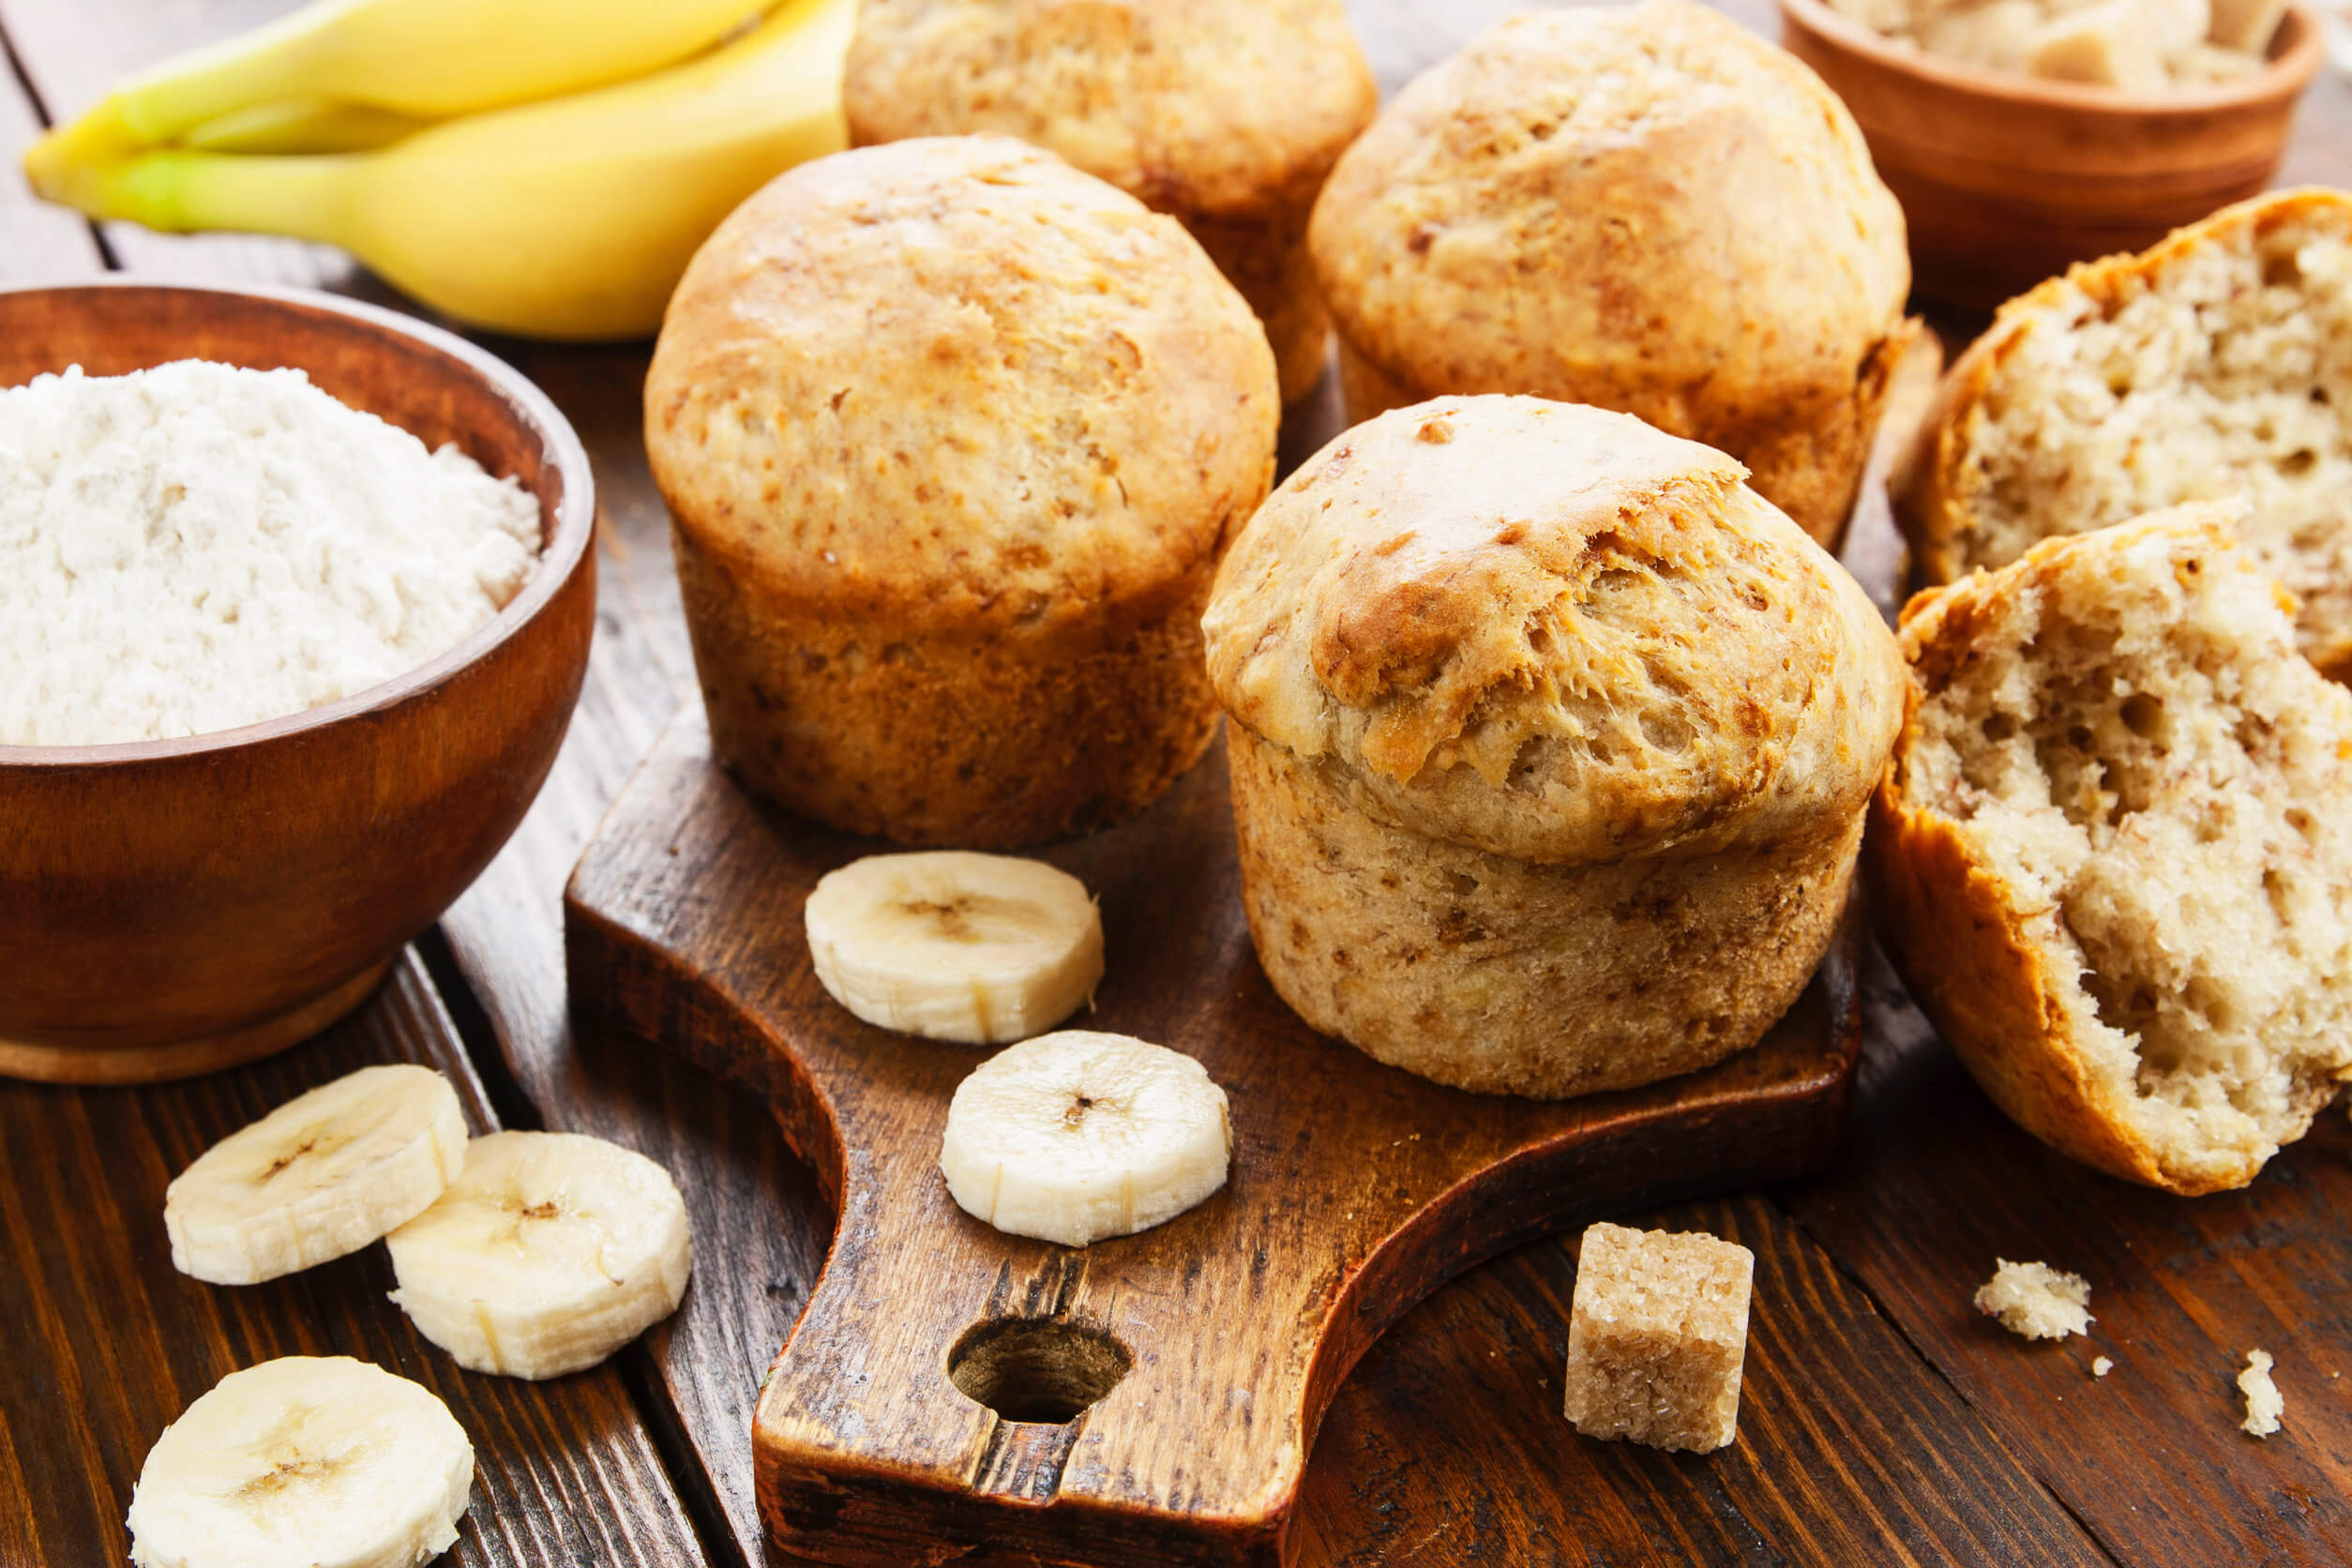 Sigue estos pasos para preparar muffins de avena y plátano perfectos